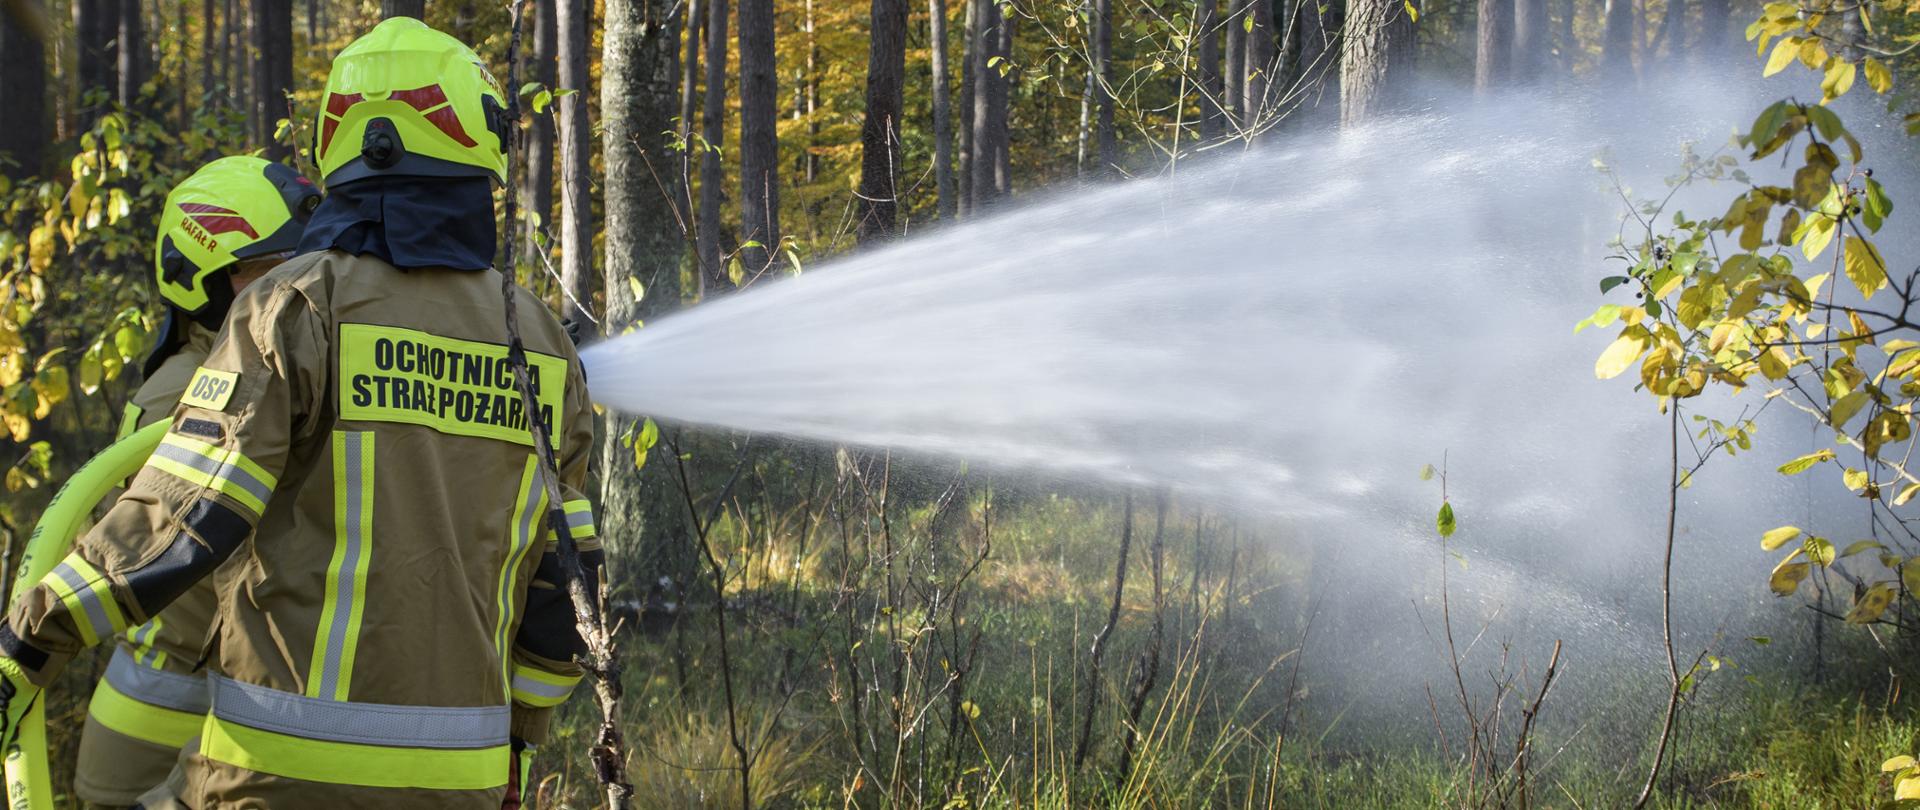 Na zdjęciu widać strażaków ochotniczej straży pożarnej podczas akcji gaśniczej w lesie